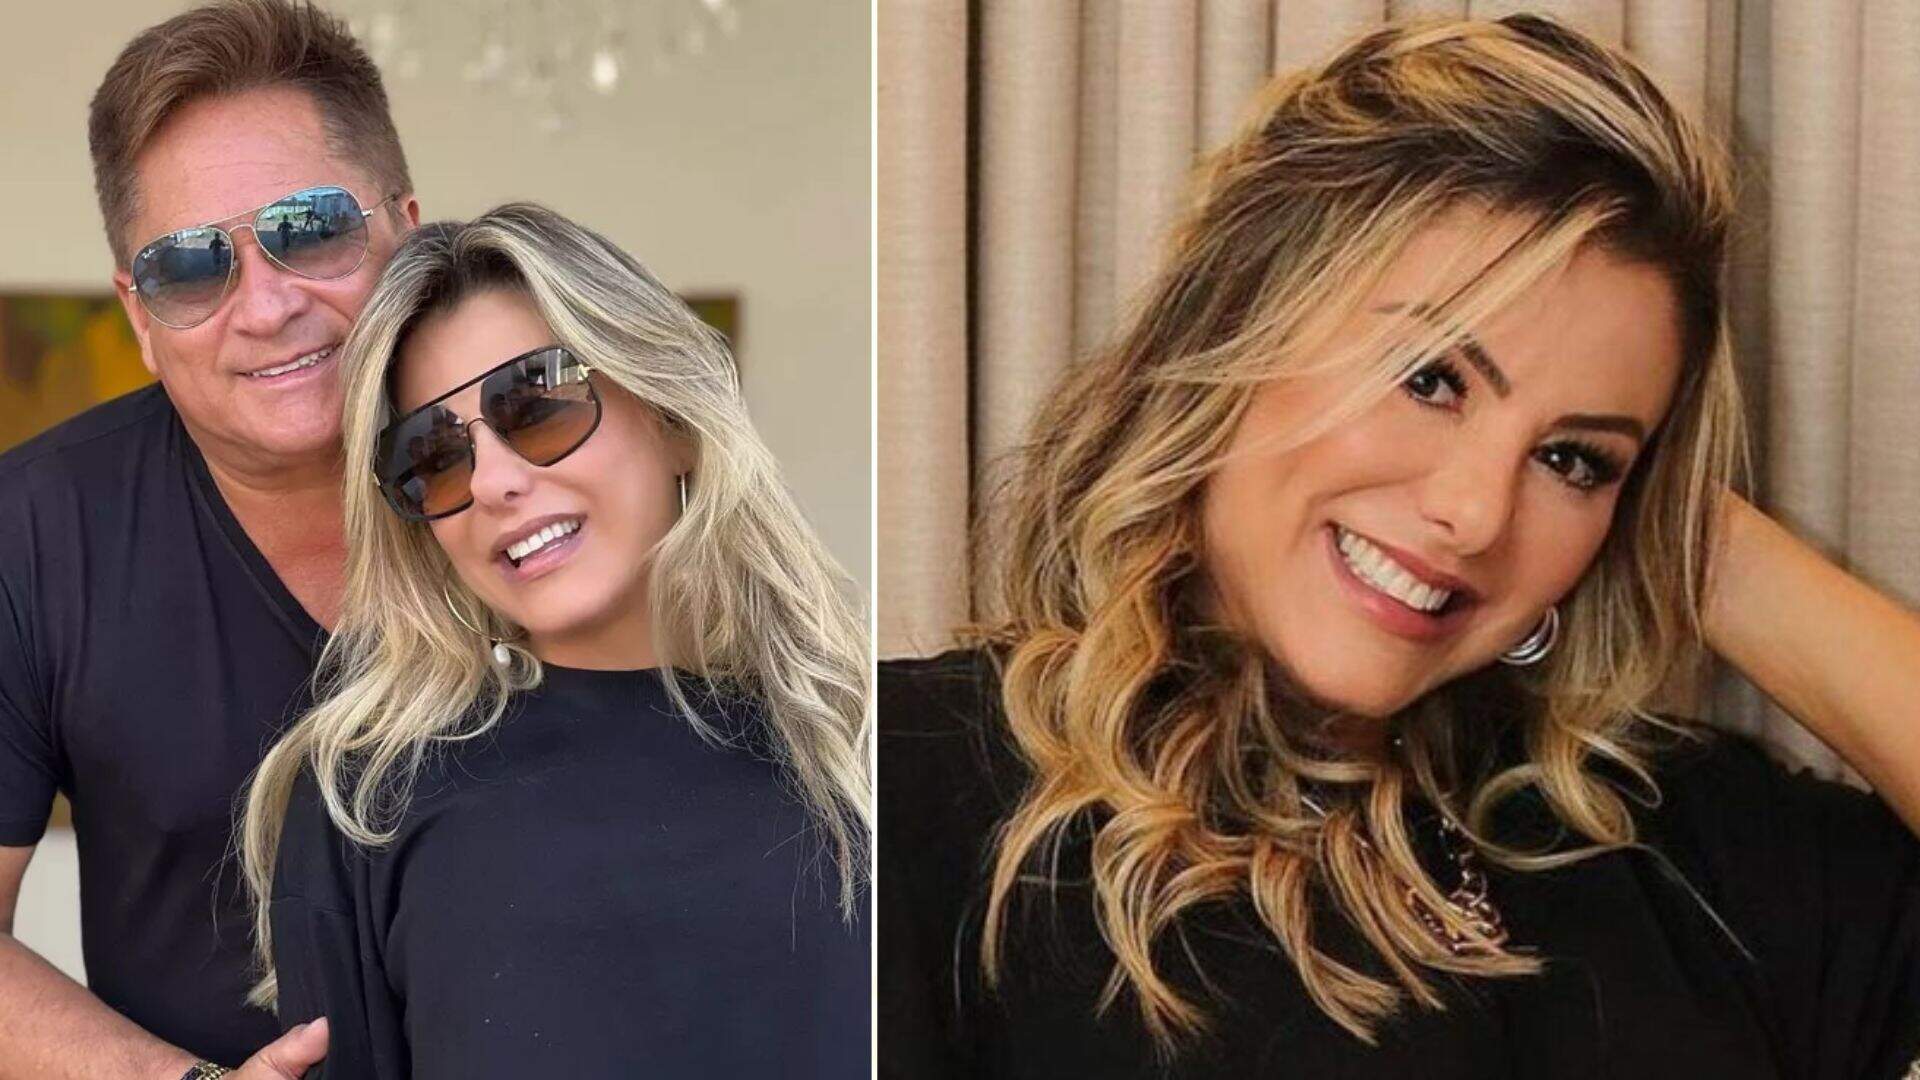 Já traiu? Esposa de Leonardo revela se já foi infiel no casamento com o sertanejo e surpreende - Metropolitana FM